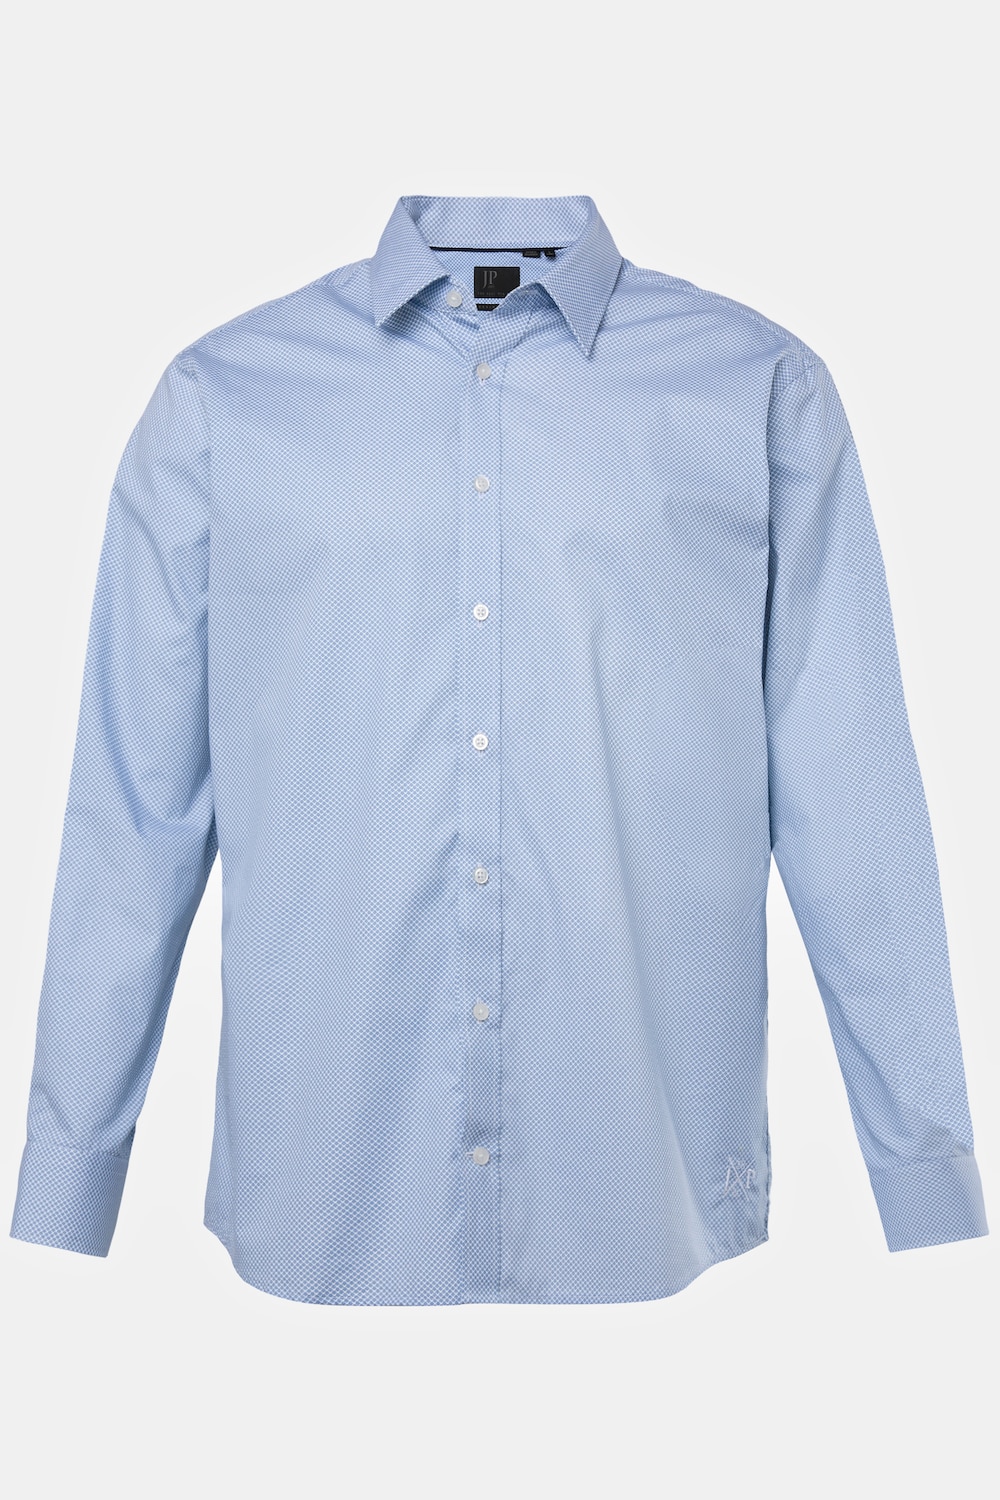 Grote Maten Zakelijk overhemd, Heren, blauw, Maat: 3XL, Katoen, JP1880